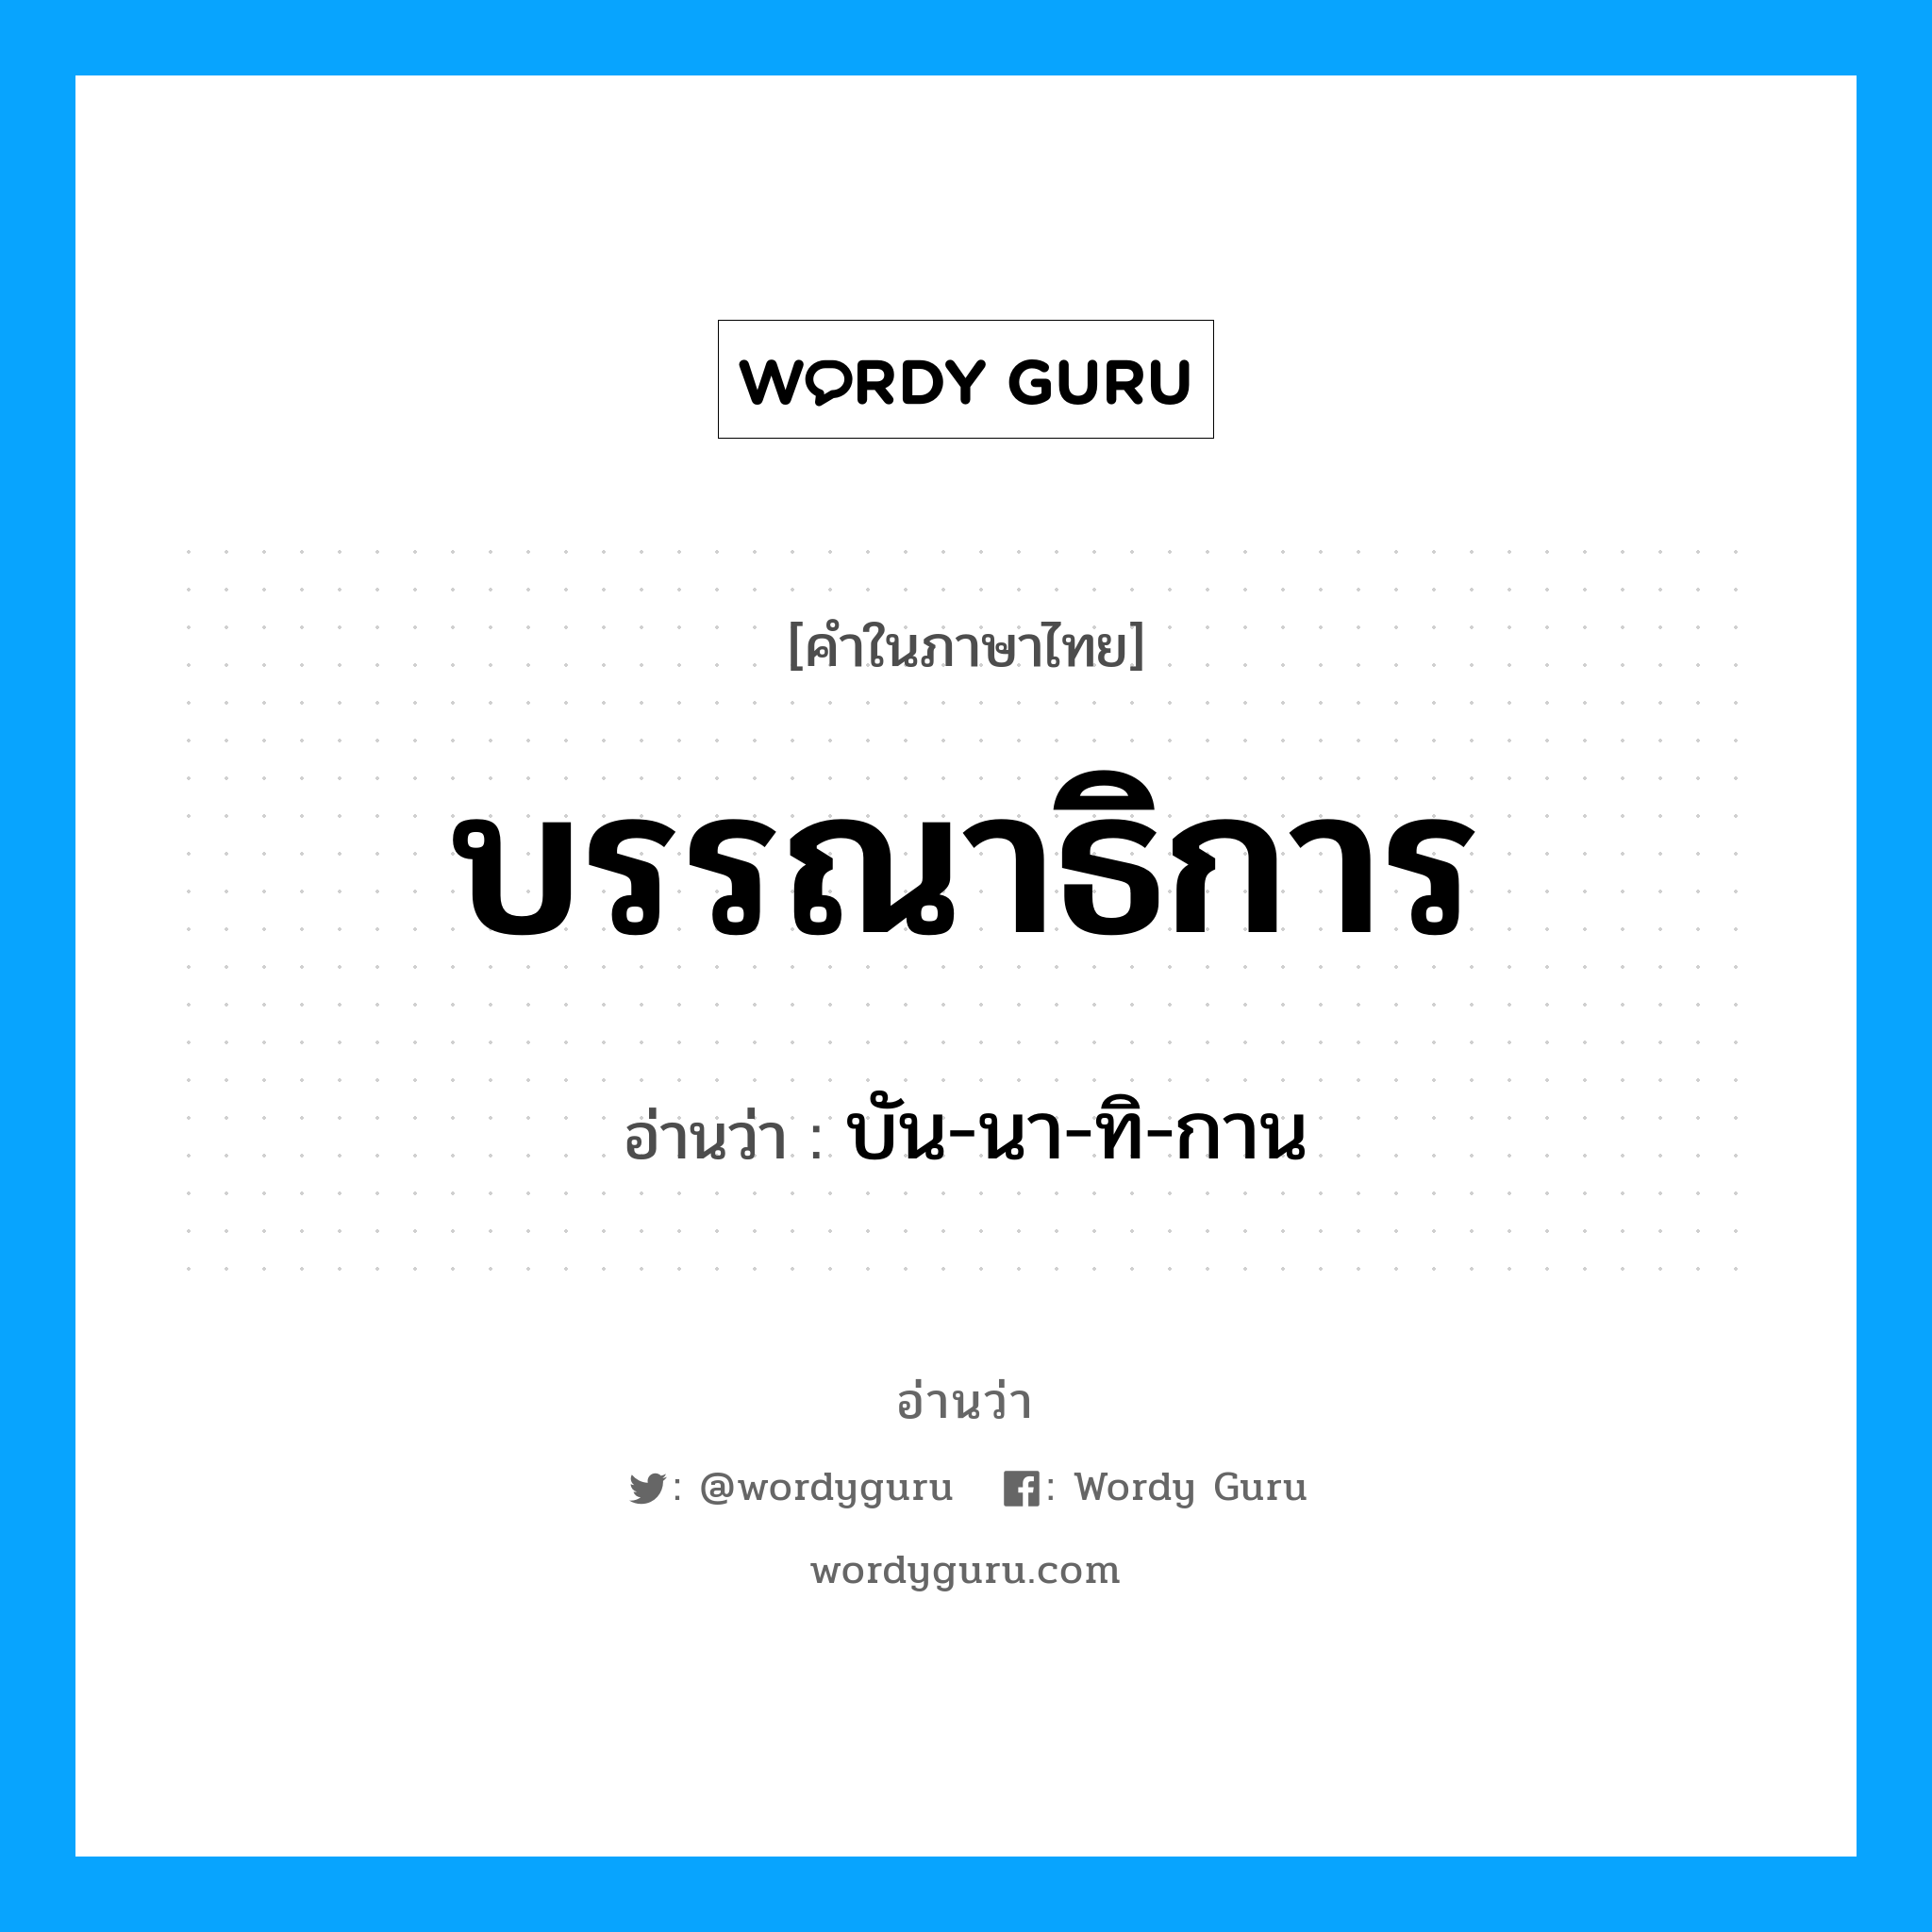 บรรณาธิการ อ่านว่า?, คำในภาษาไทย บรรณาธิการ อ่านว่า บัน-นา-ทิ-กาน